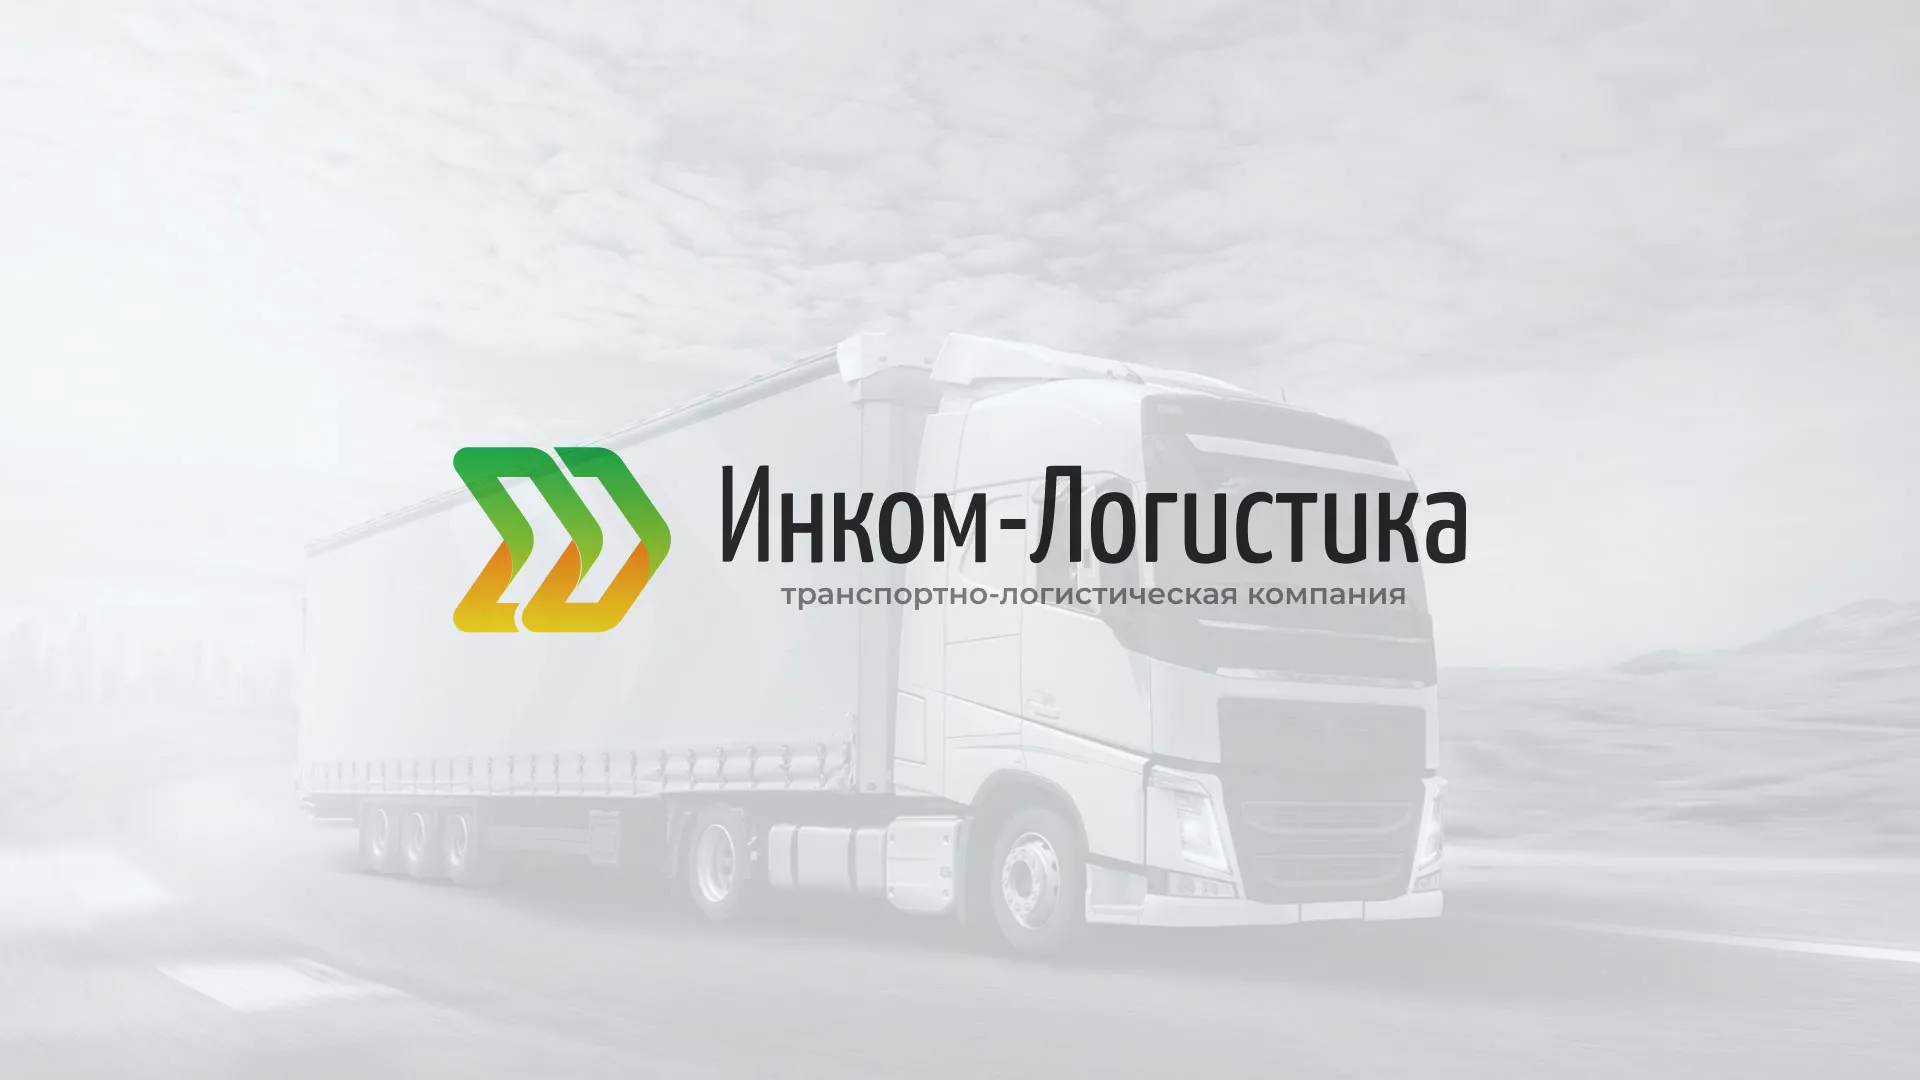 Разработка логотипа и сайта компании «Инком-Логистика» в Верхнем Уфалее